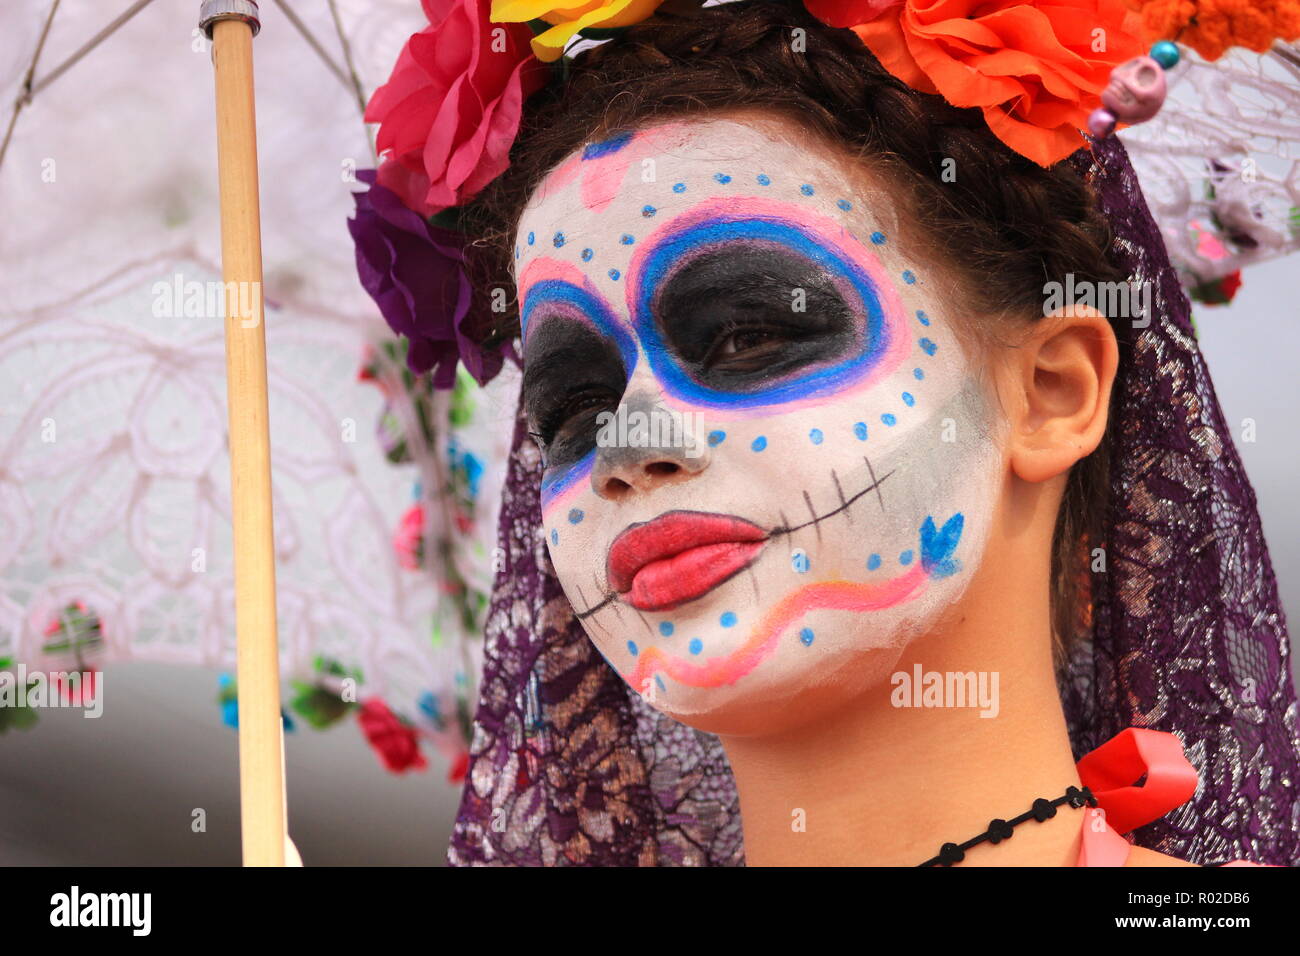 Femme avec beau crâne en sucre maquillage (Catrina) durant le Jour des Morts (Dia de los Muertos) Banque D'Images